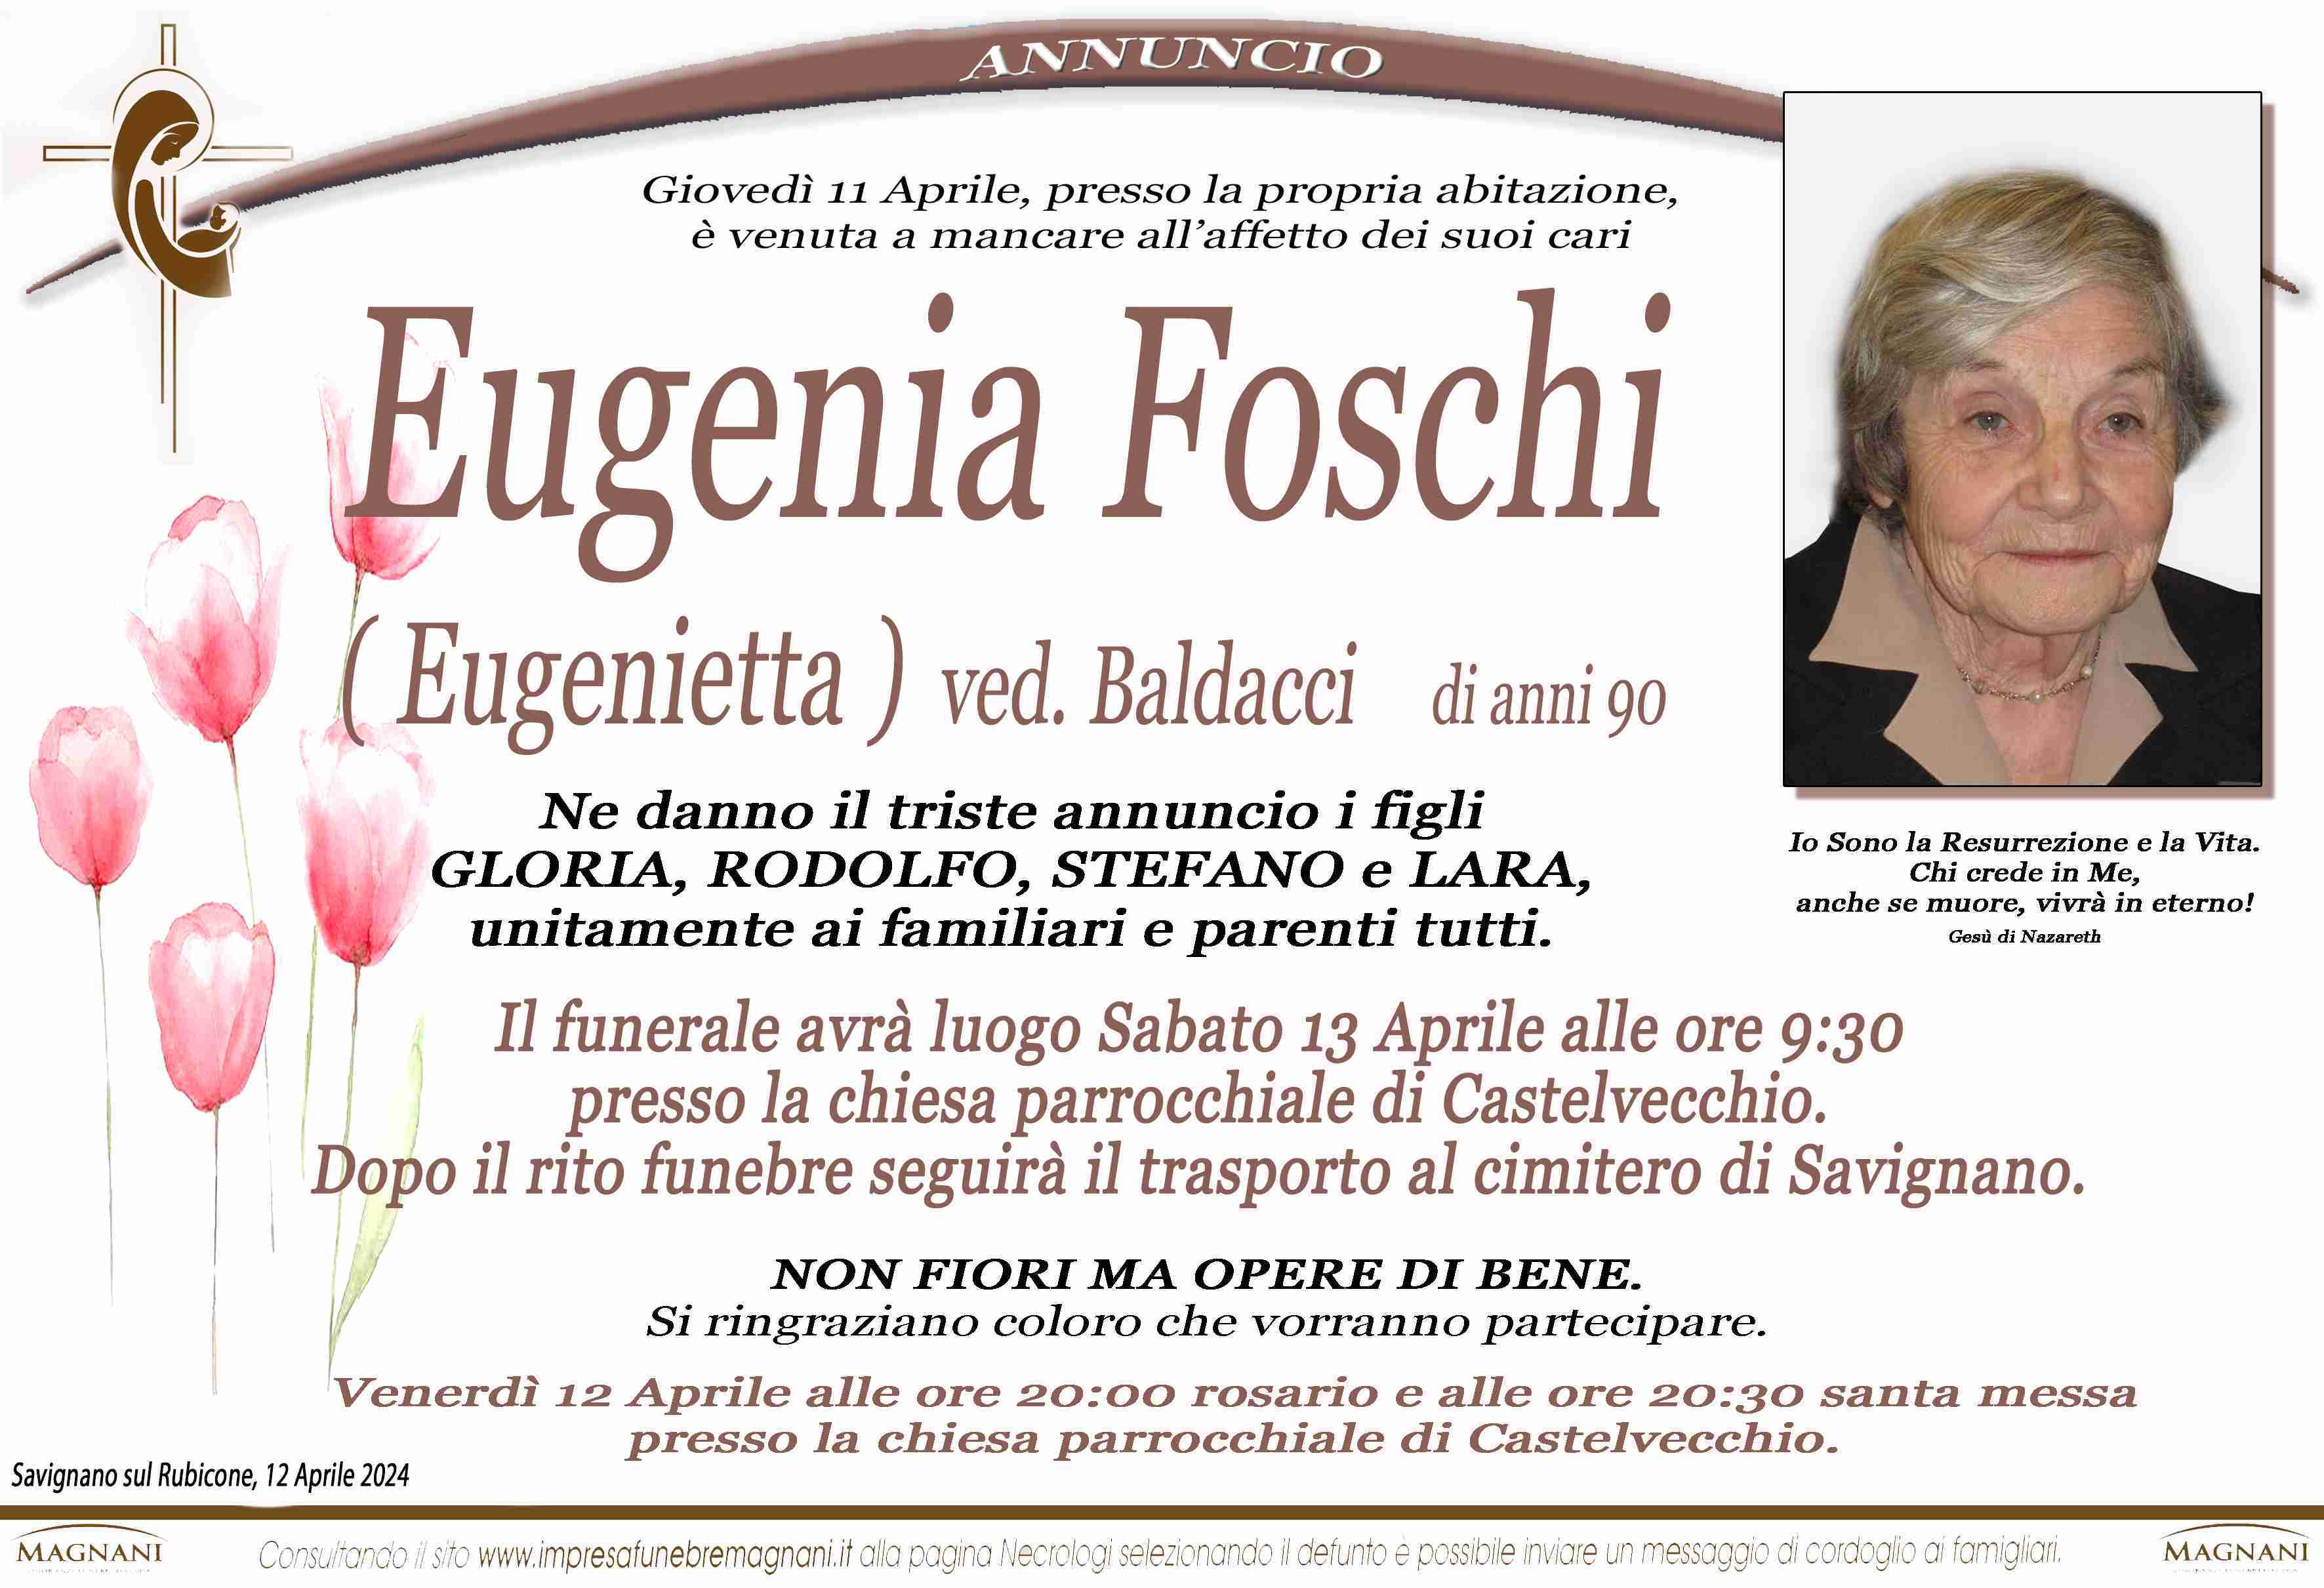 Eugenia Foschi